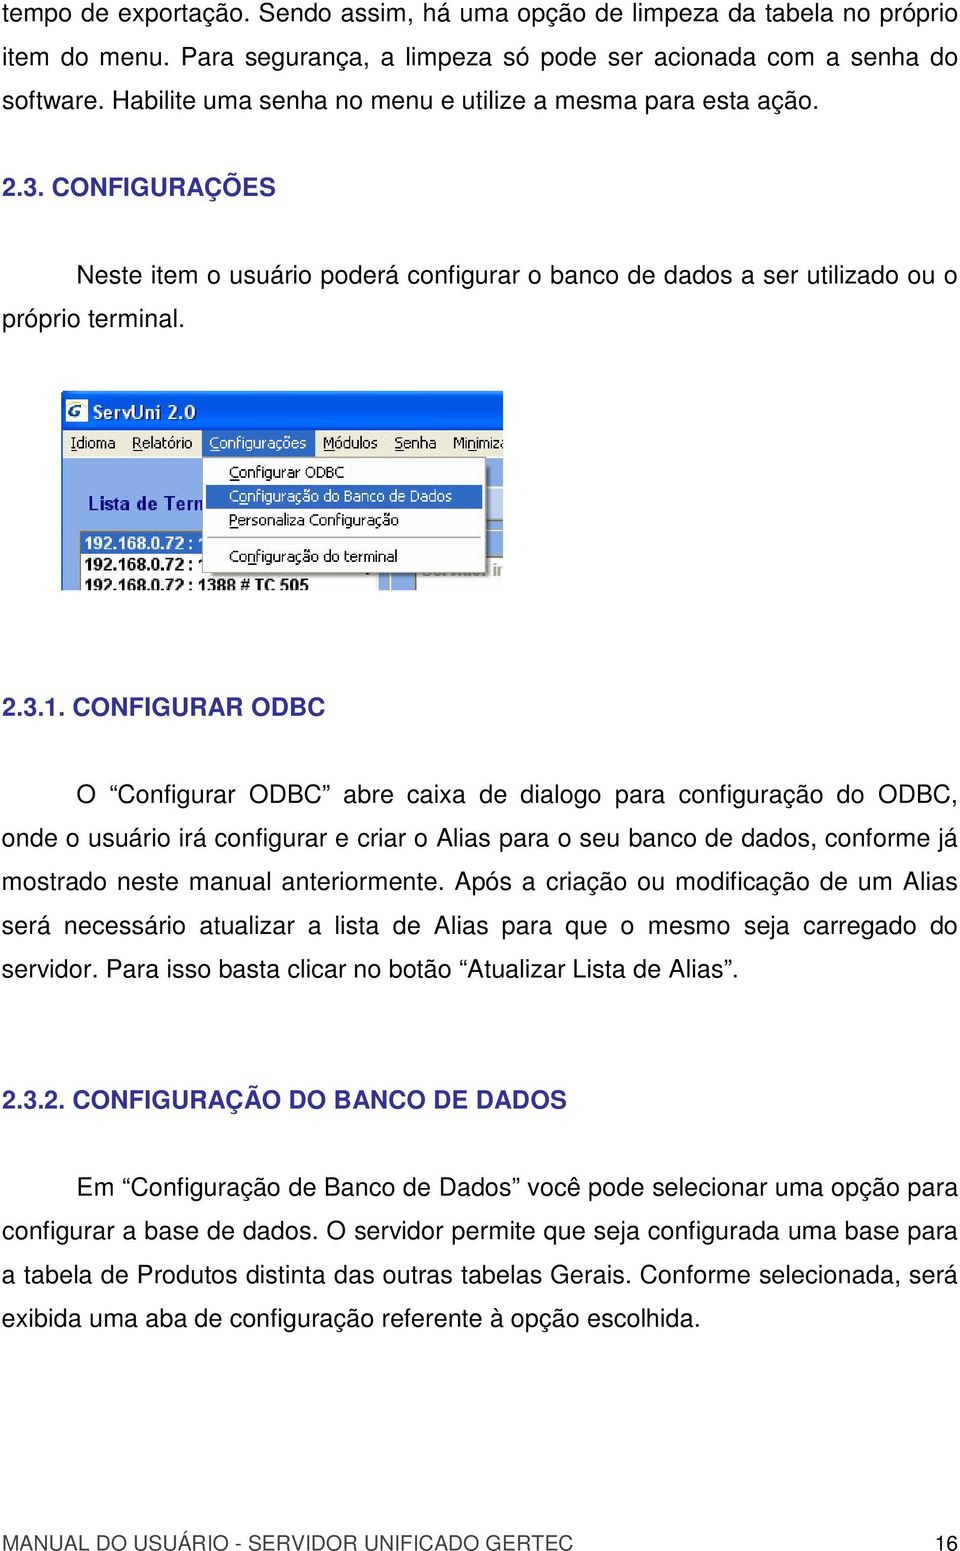 CONFIGURAR ODBC O Configurar ODBC abre caixa de dialogo para configuração do ODBC, onde o usuário irá configurar e criar o Alias para o seu banco de dados, conforme já mostrado neste manual